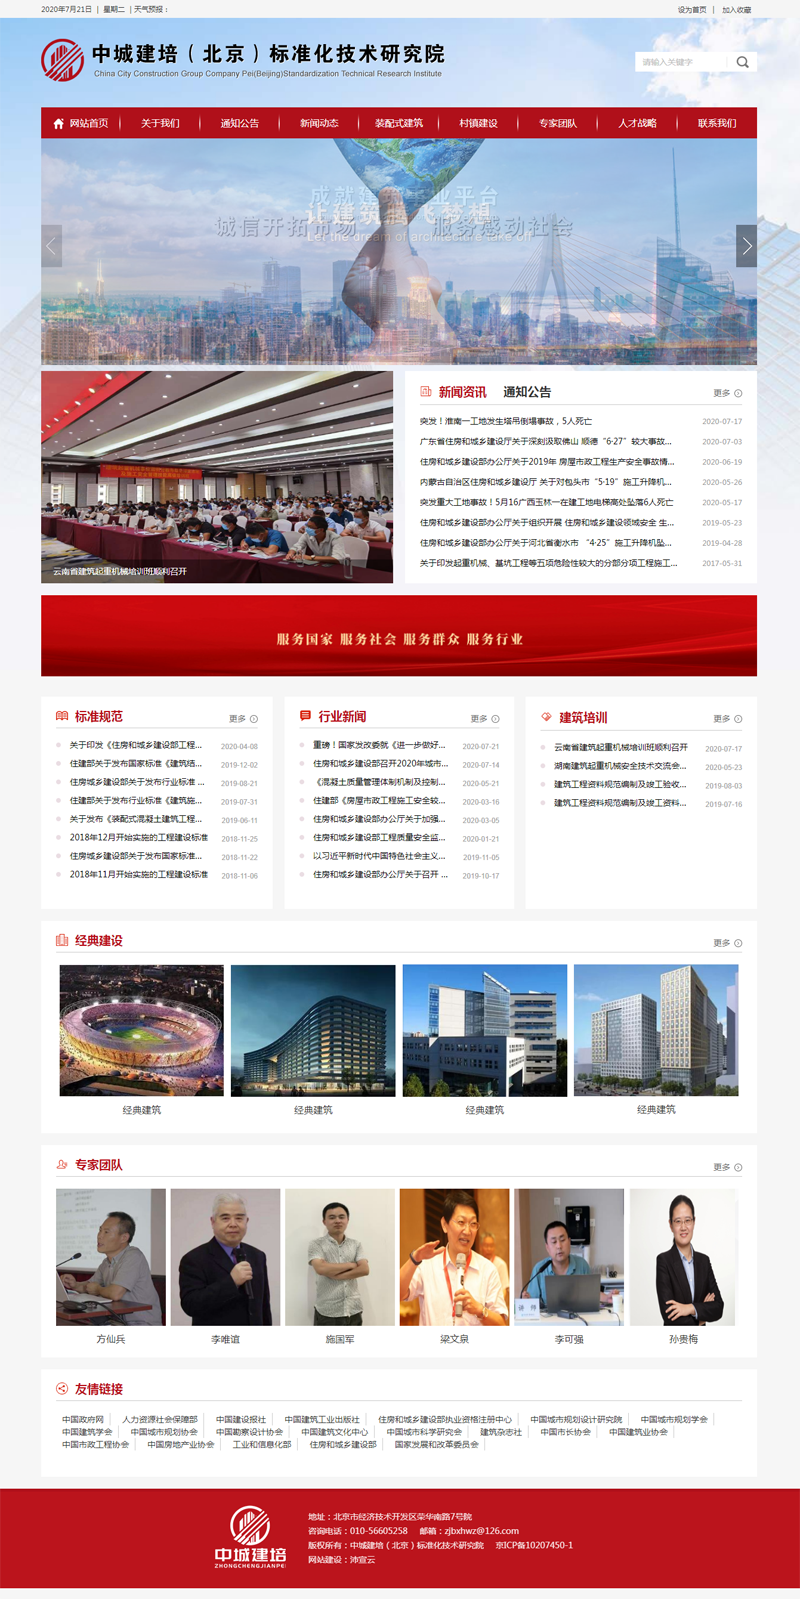 贵州建培研究院官方网站正式上线